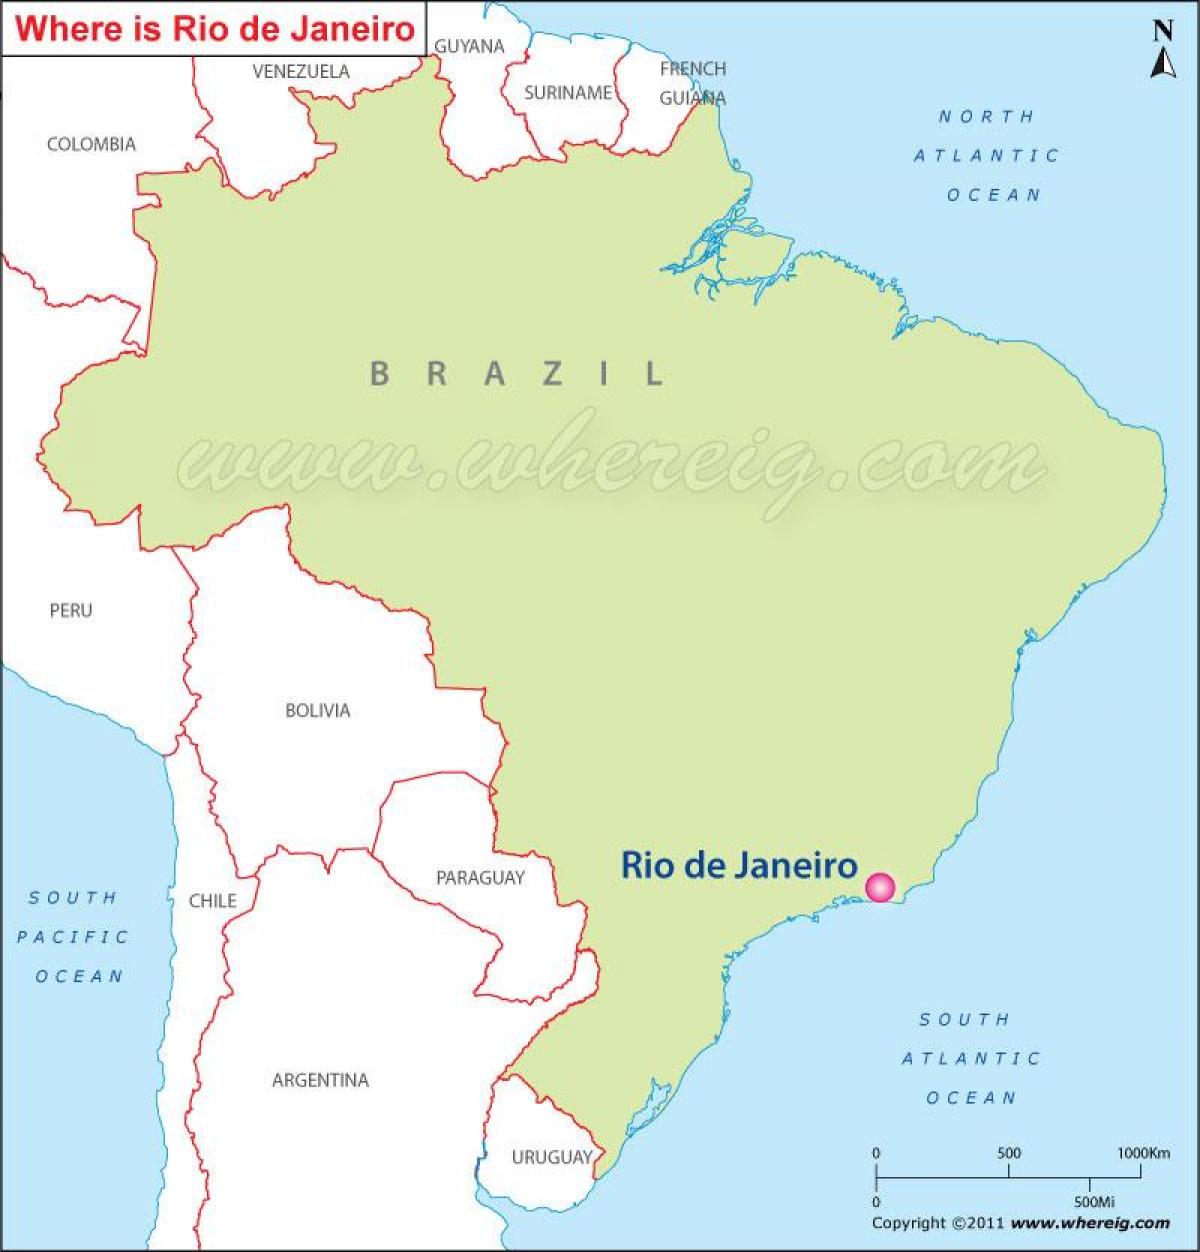 Карта на Рио де Жанеиро во Бразил